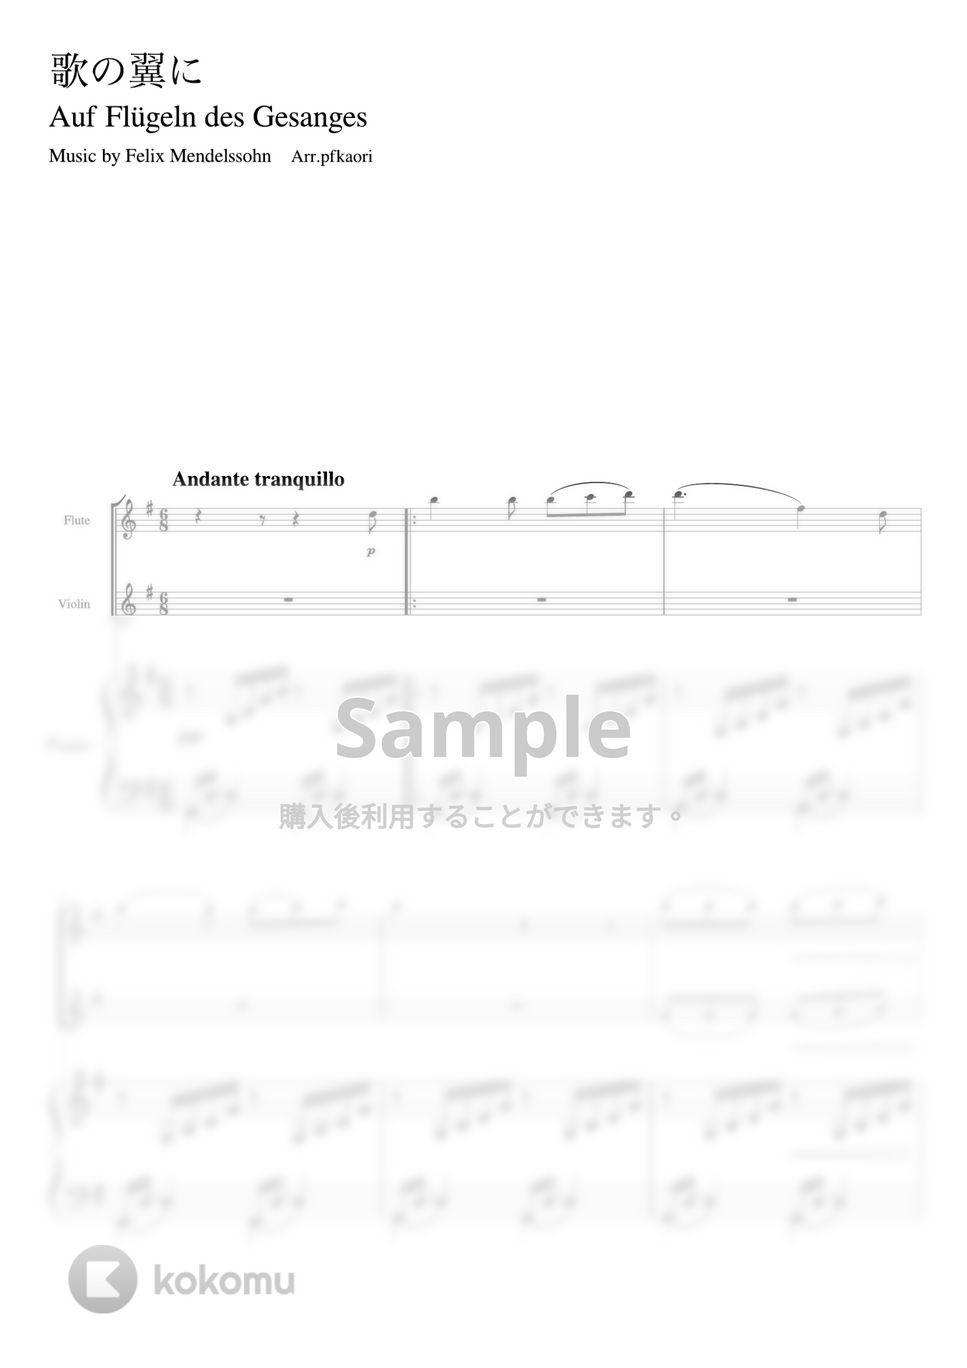 メンデルスゾーン - 歌の翼に (G・ピアノトリオ/fl&vn) by pfkaori